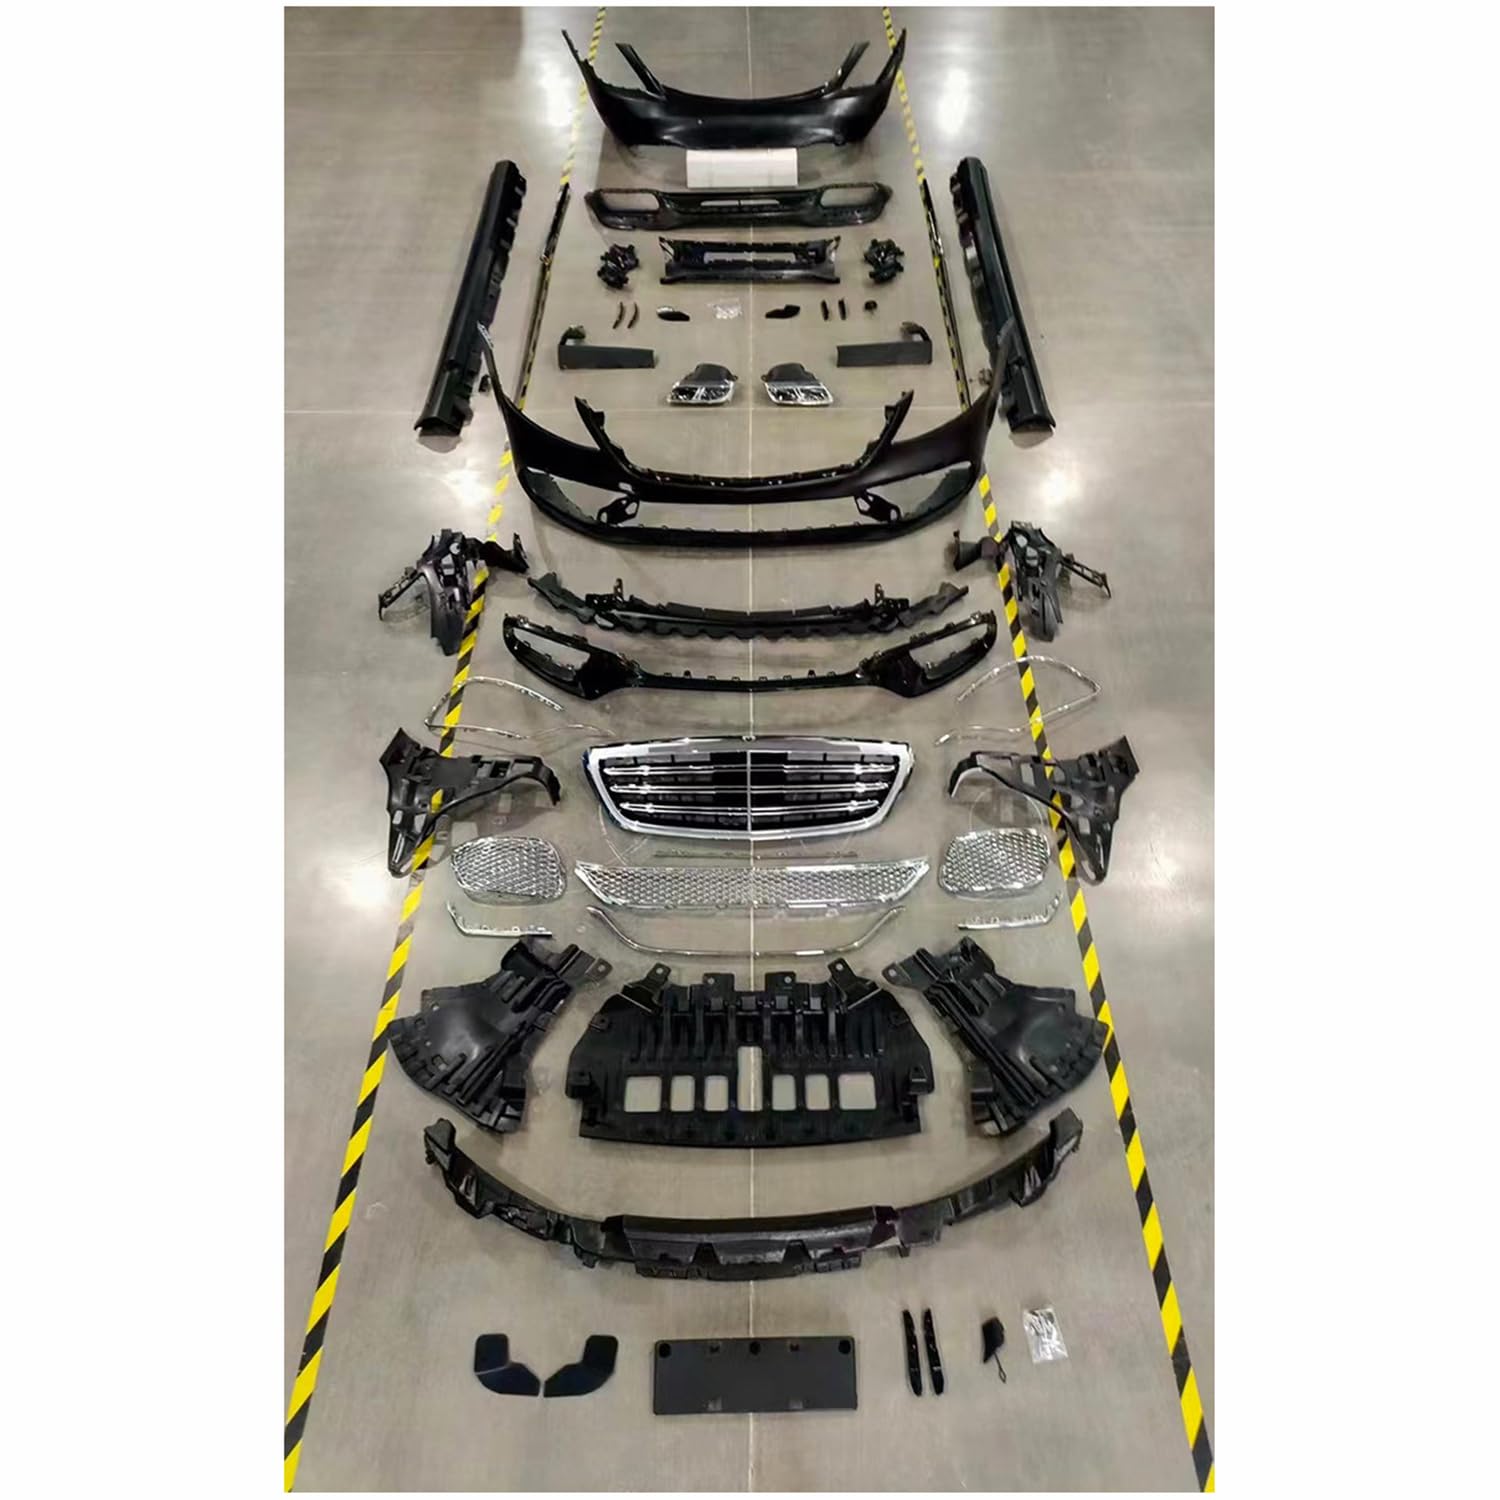 AutoHecklippe Für Mercedes Benz S-Class S65 W222 S65AMG 2014-2020,Auto Hecks toß Stange Diffusor Spoiler schutz Body Kit Dekoration,B-1set with ACC Primer von SPYKEY